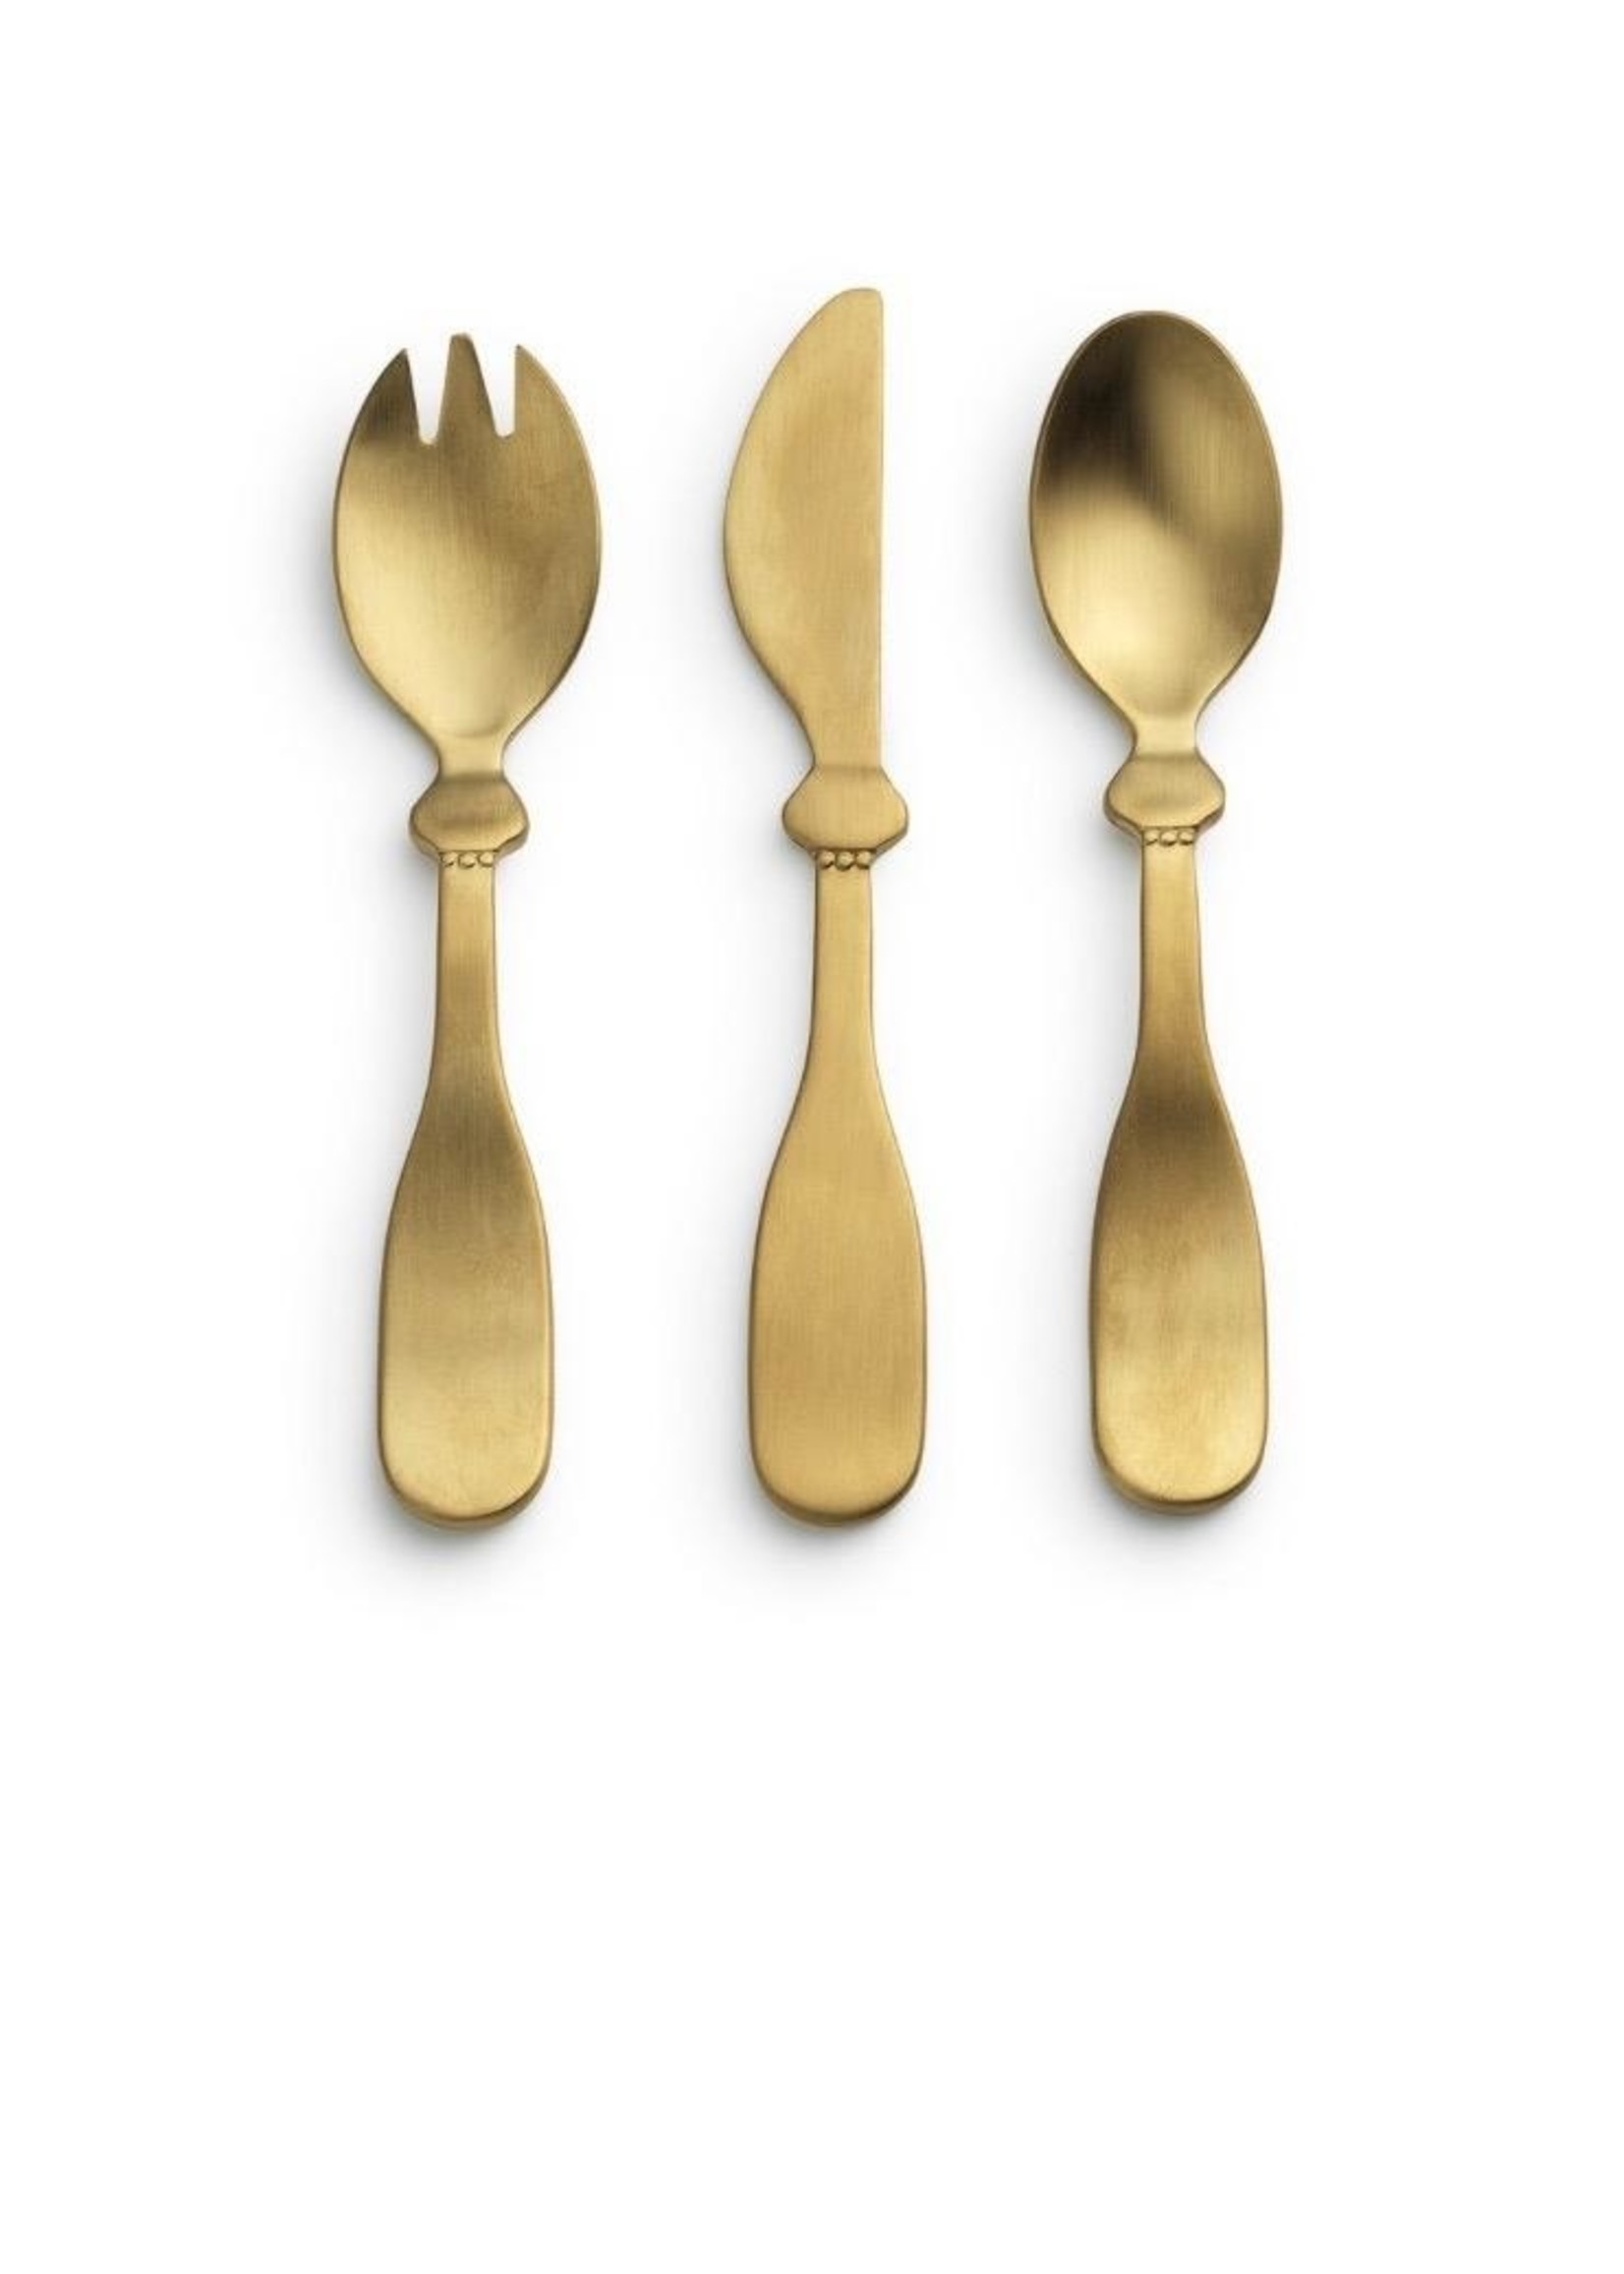 Elodie Details Elodie Details, Matt gold/Brass Children's Cutlery set